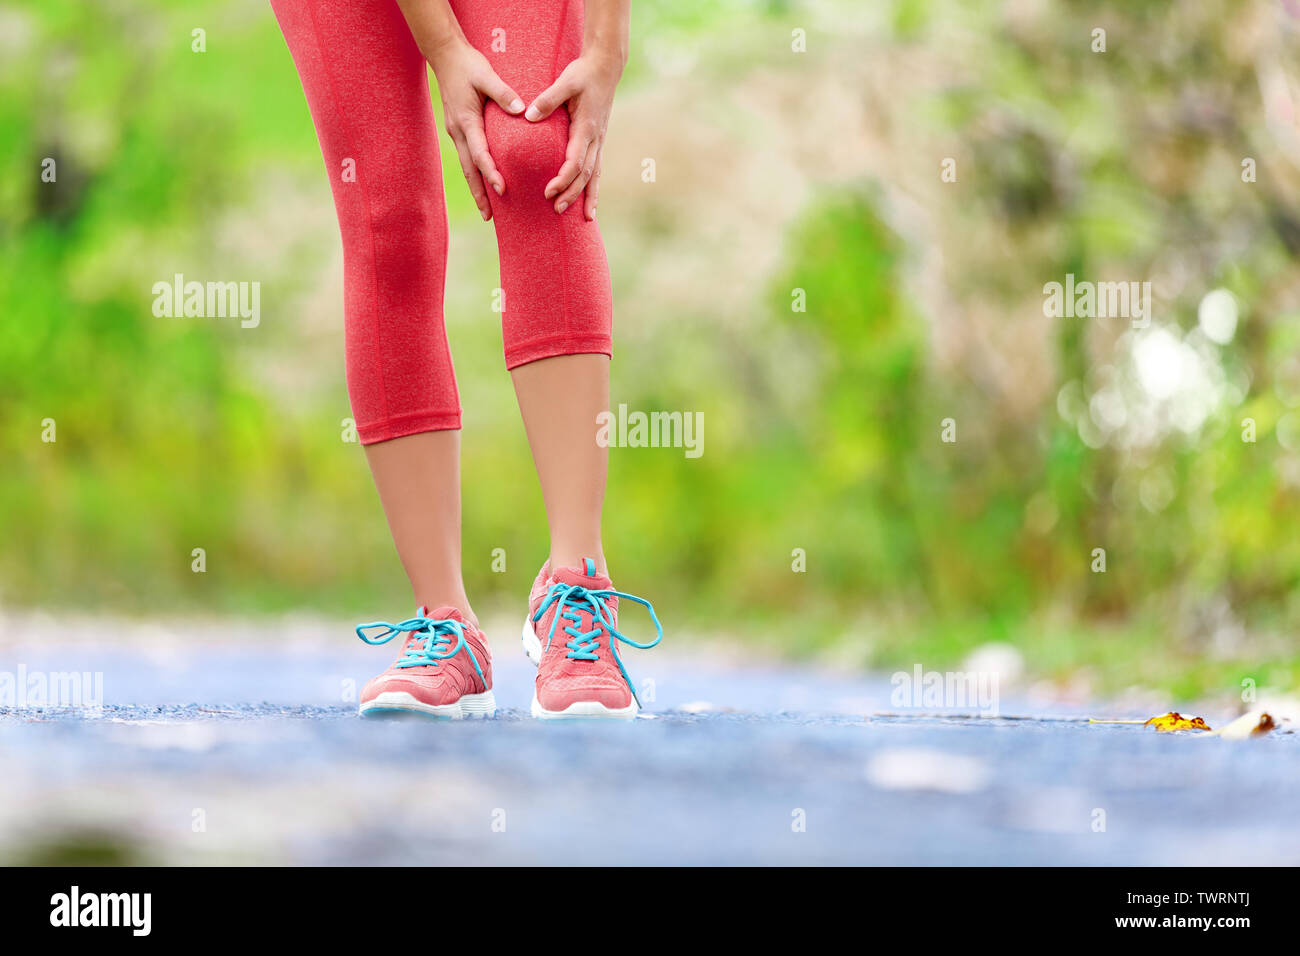 Knieverletzung - Sport laufen Knieverletzungen auf Frau. Läuferin mit Schmerzen von Verstauchung Knie. In der Nähe der Beine, Muskel- und Knie draußen im Wald. Stockfoto